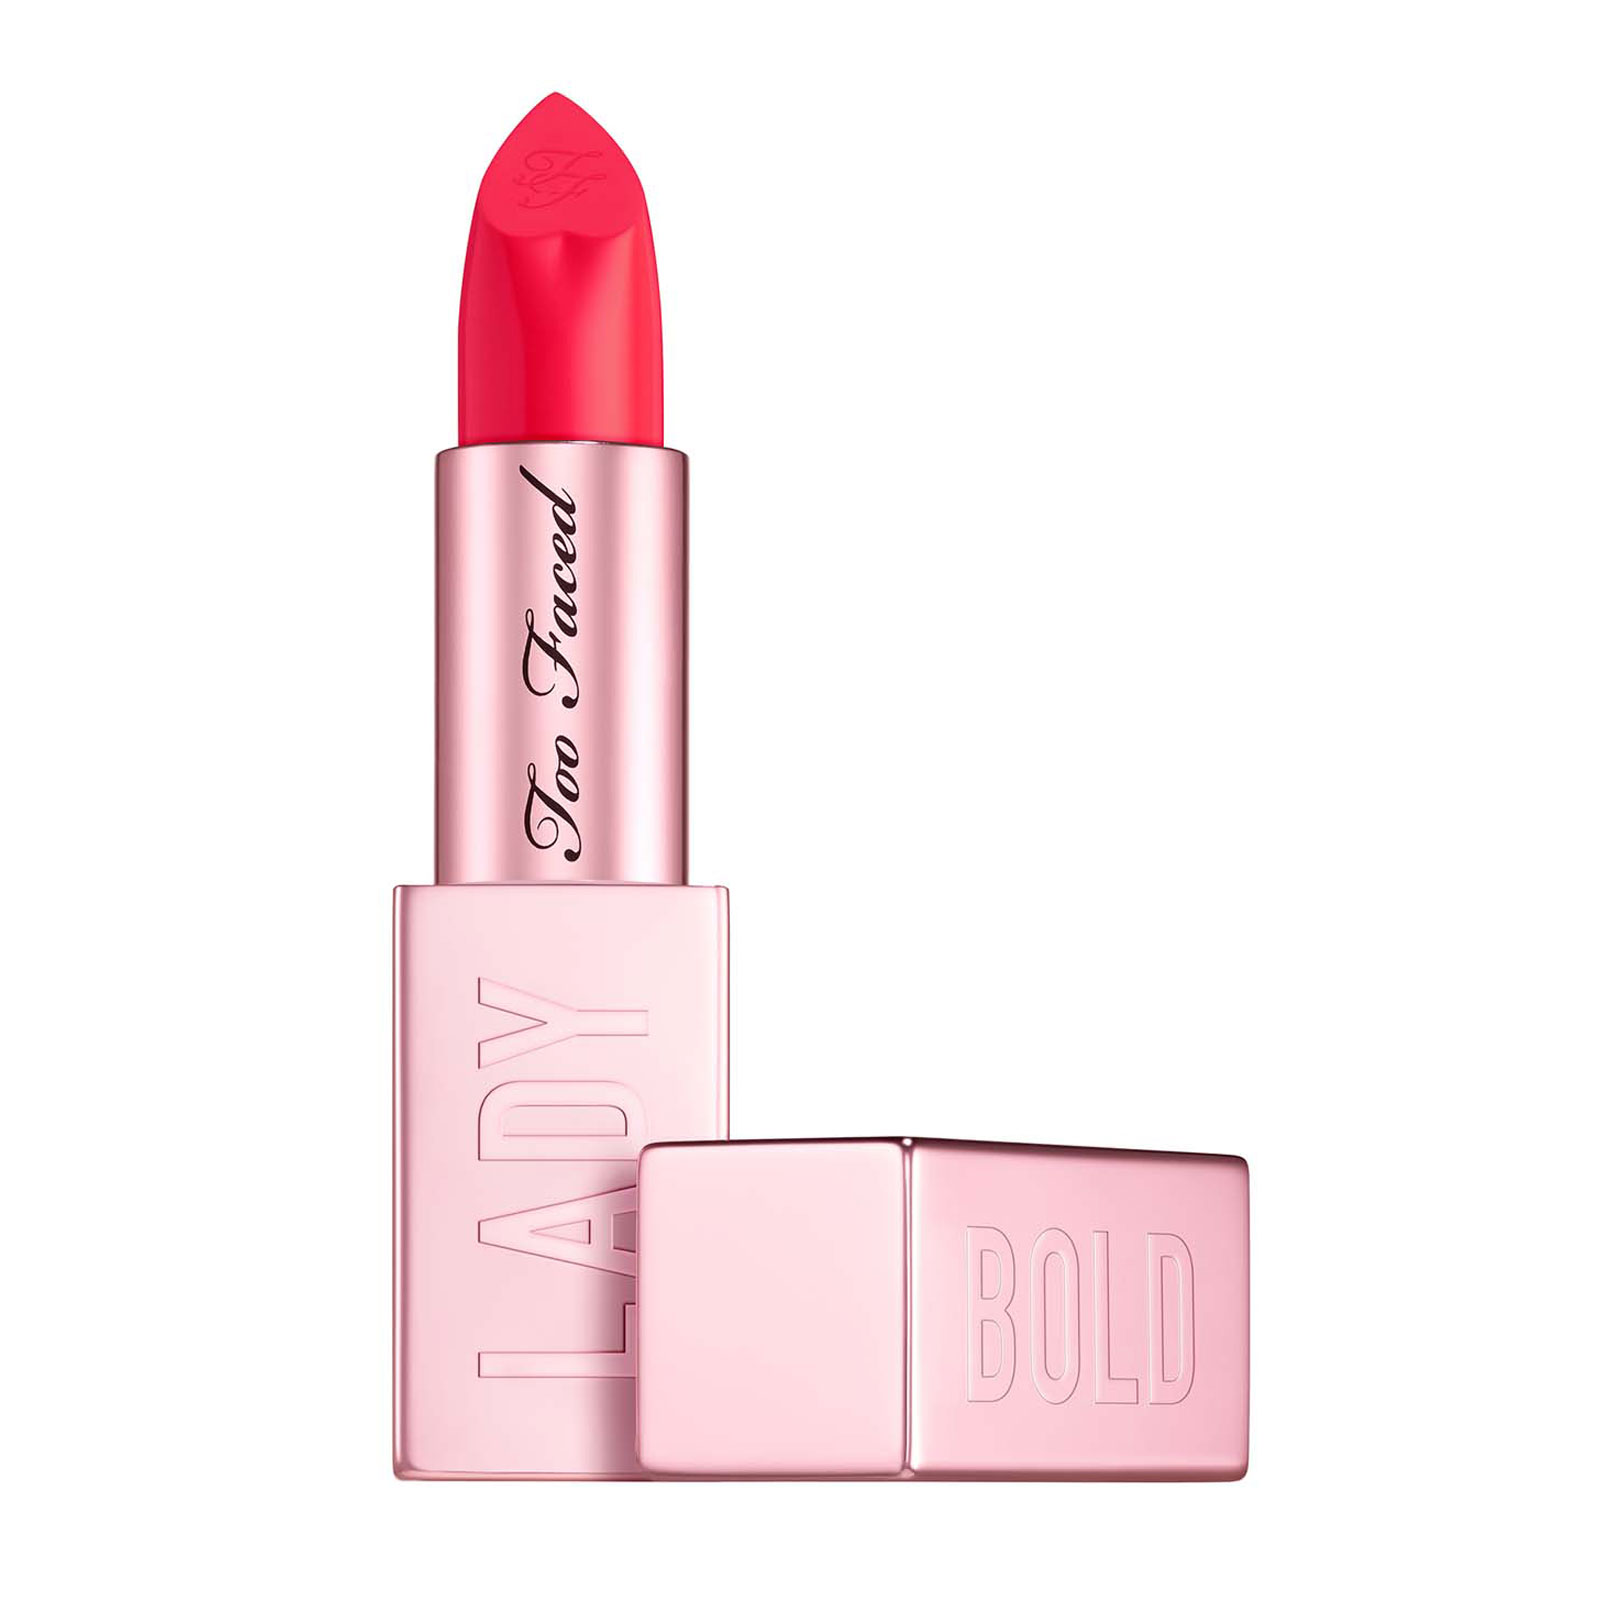 too faced lady bold em power pigment cream lipstick 4.5g you do you